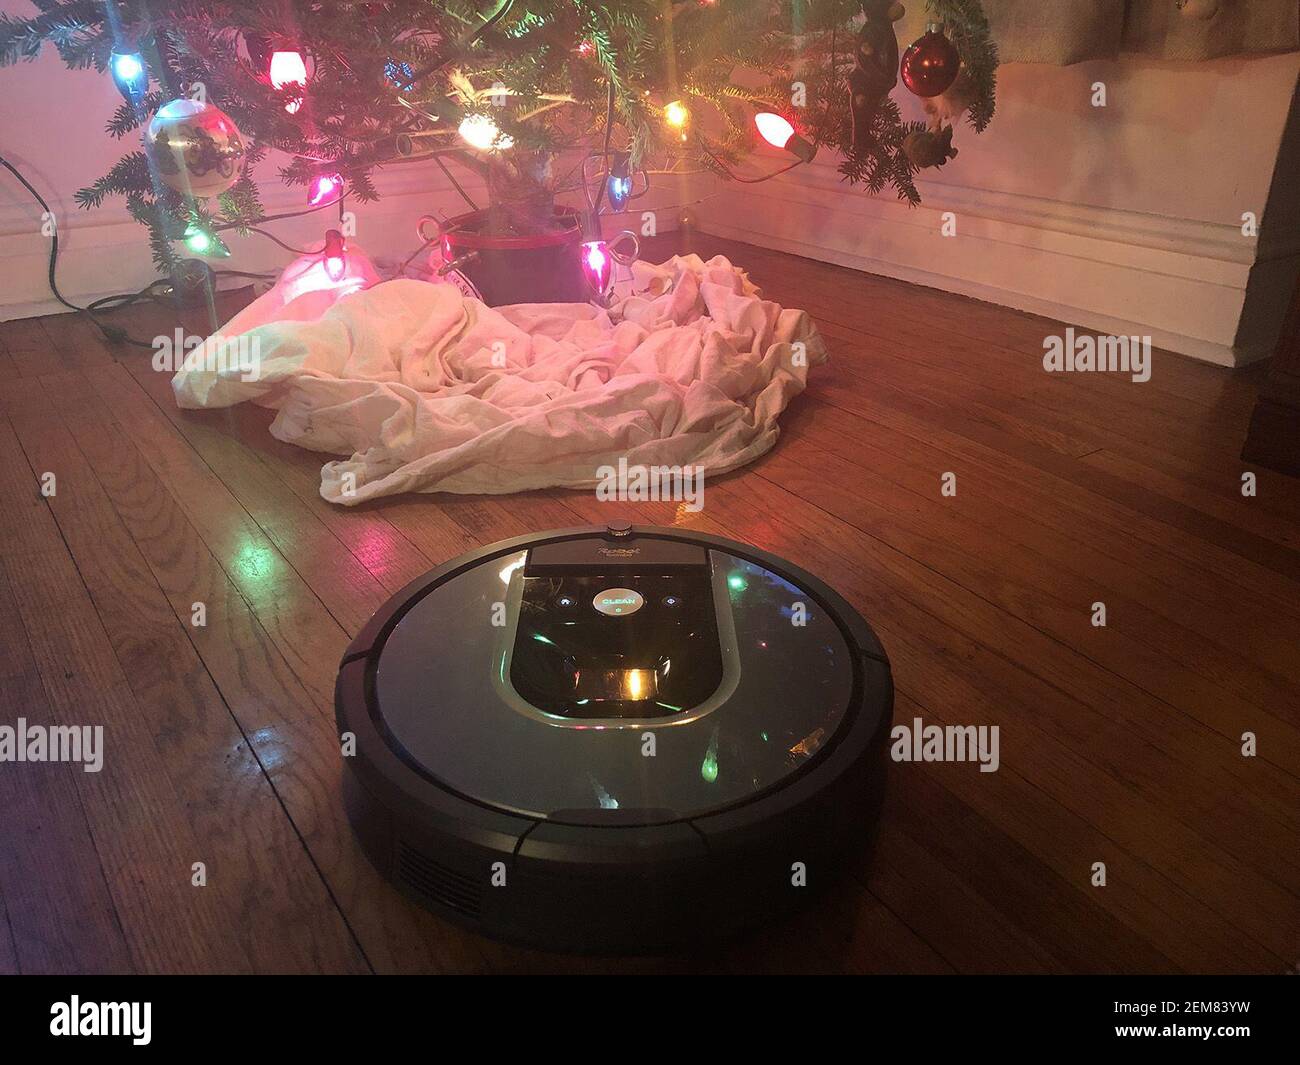 Es ist faszinierend zu beobachten, wie Roomba einen Raum kartografiert, ein  Muster ausbildet und dann mit jedem Hindernis umgeht -- Katzenfutter  umsäumen, Stuhlbeine umweben, sich unter dem Speisezimmerschrank befreien.  Oh, und der